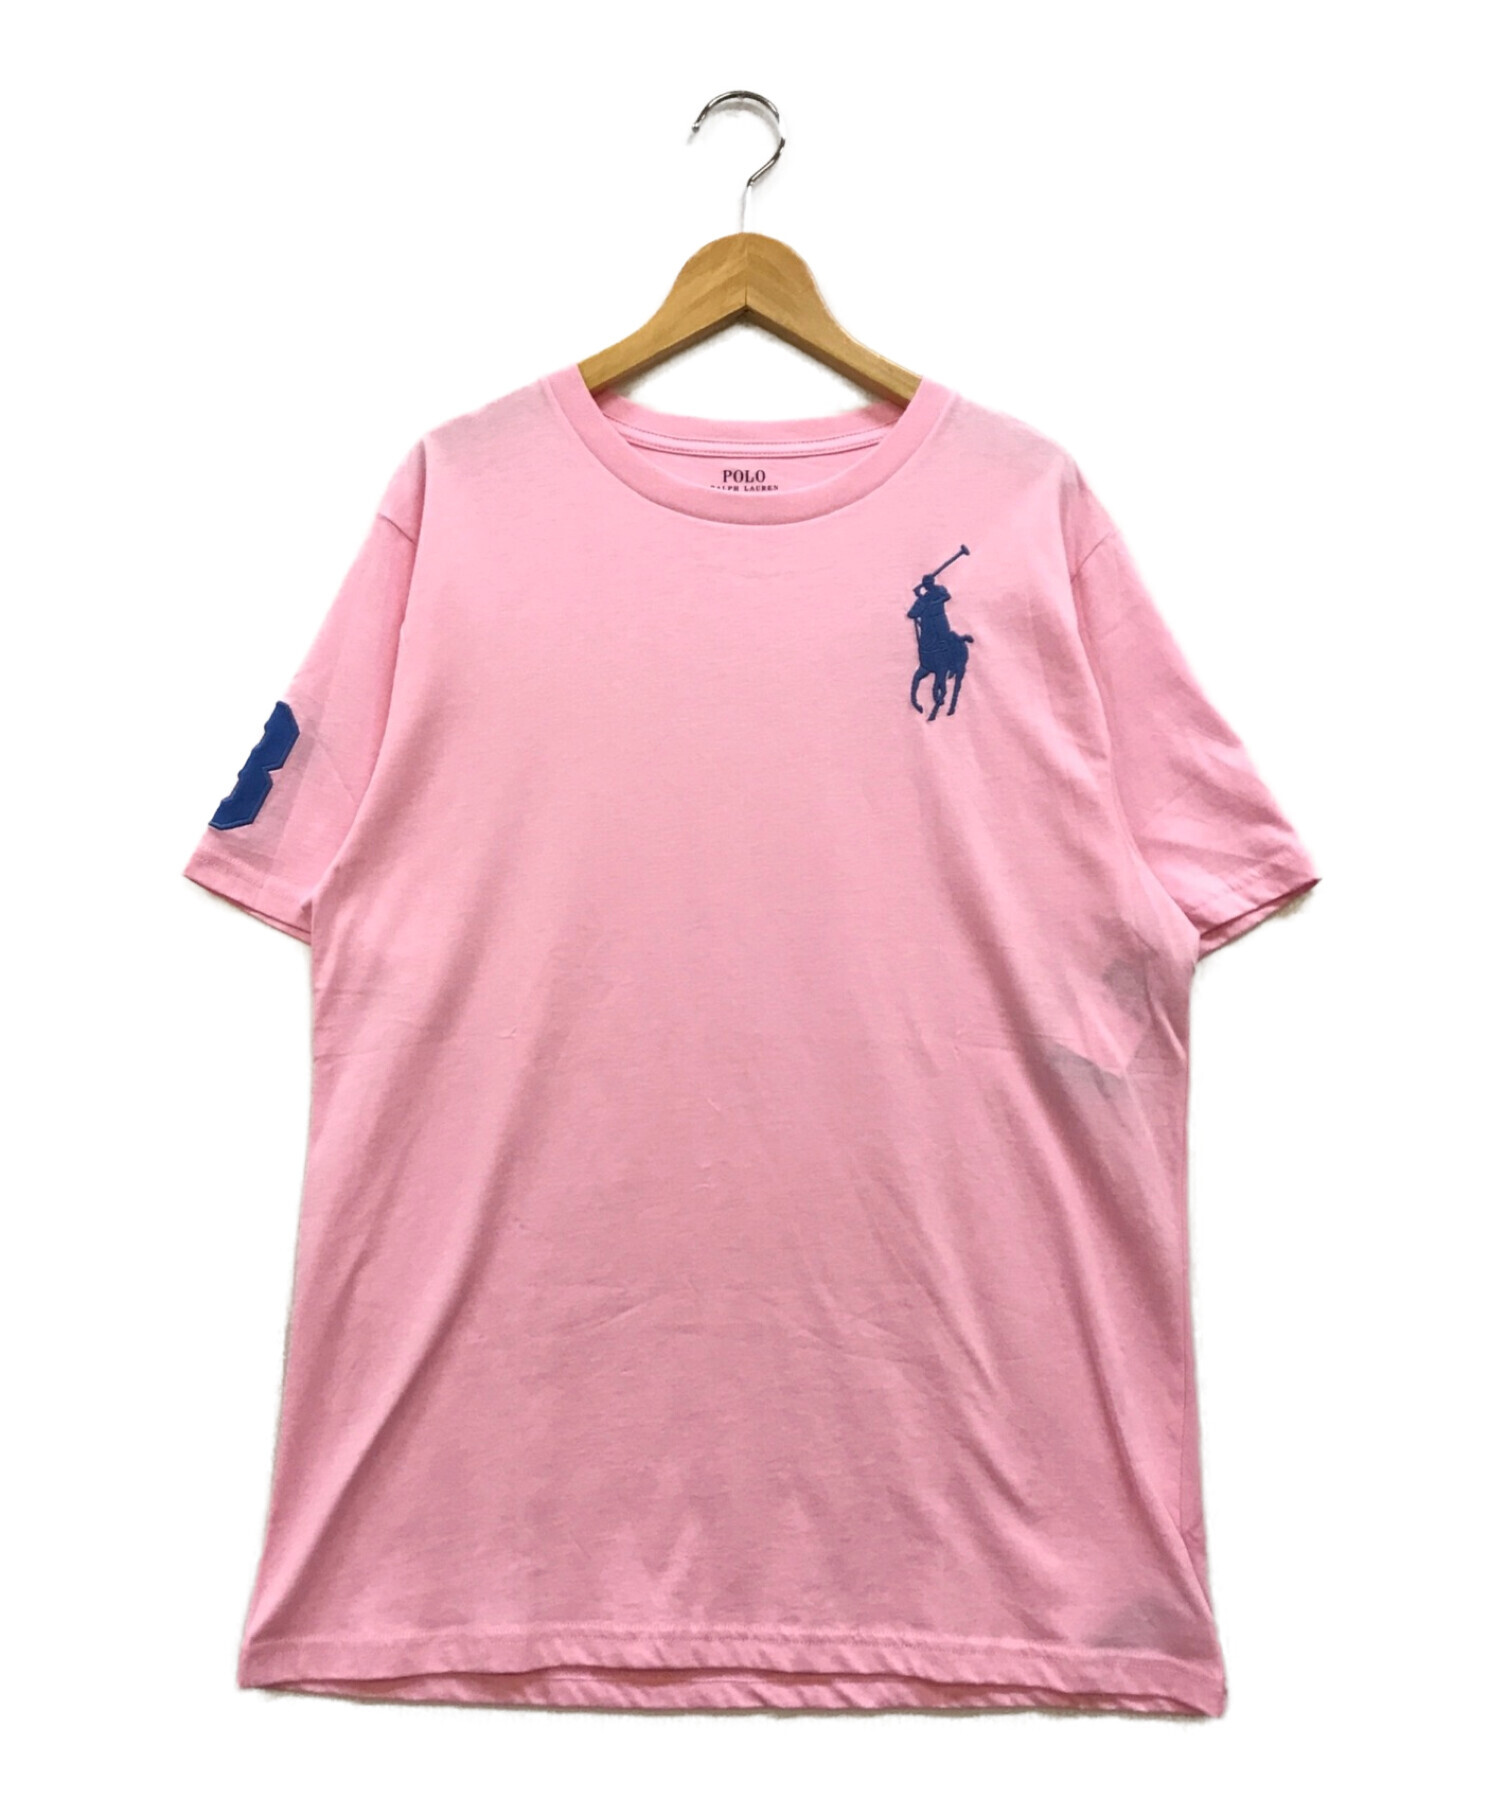 POLO RALPH LAUREN (ポロ・ラルフローレン) ホース刺繍Tシャツ ピンク サイズ:XL 未使用品